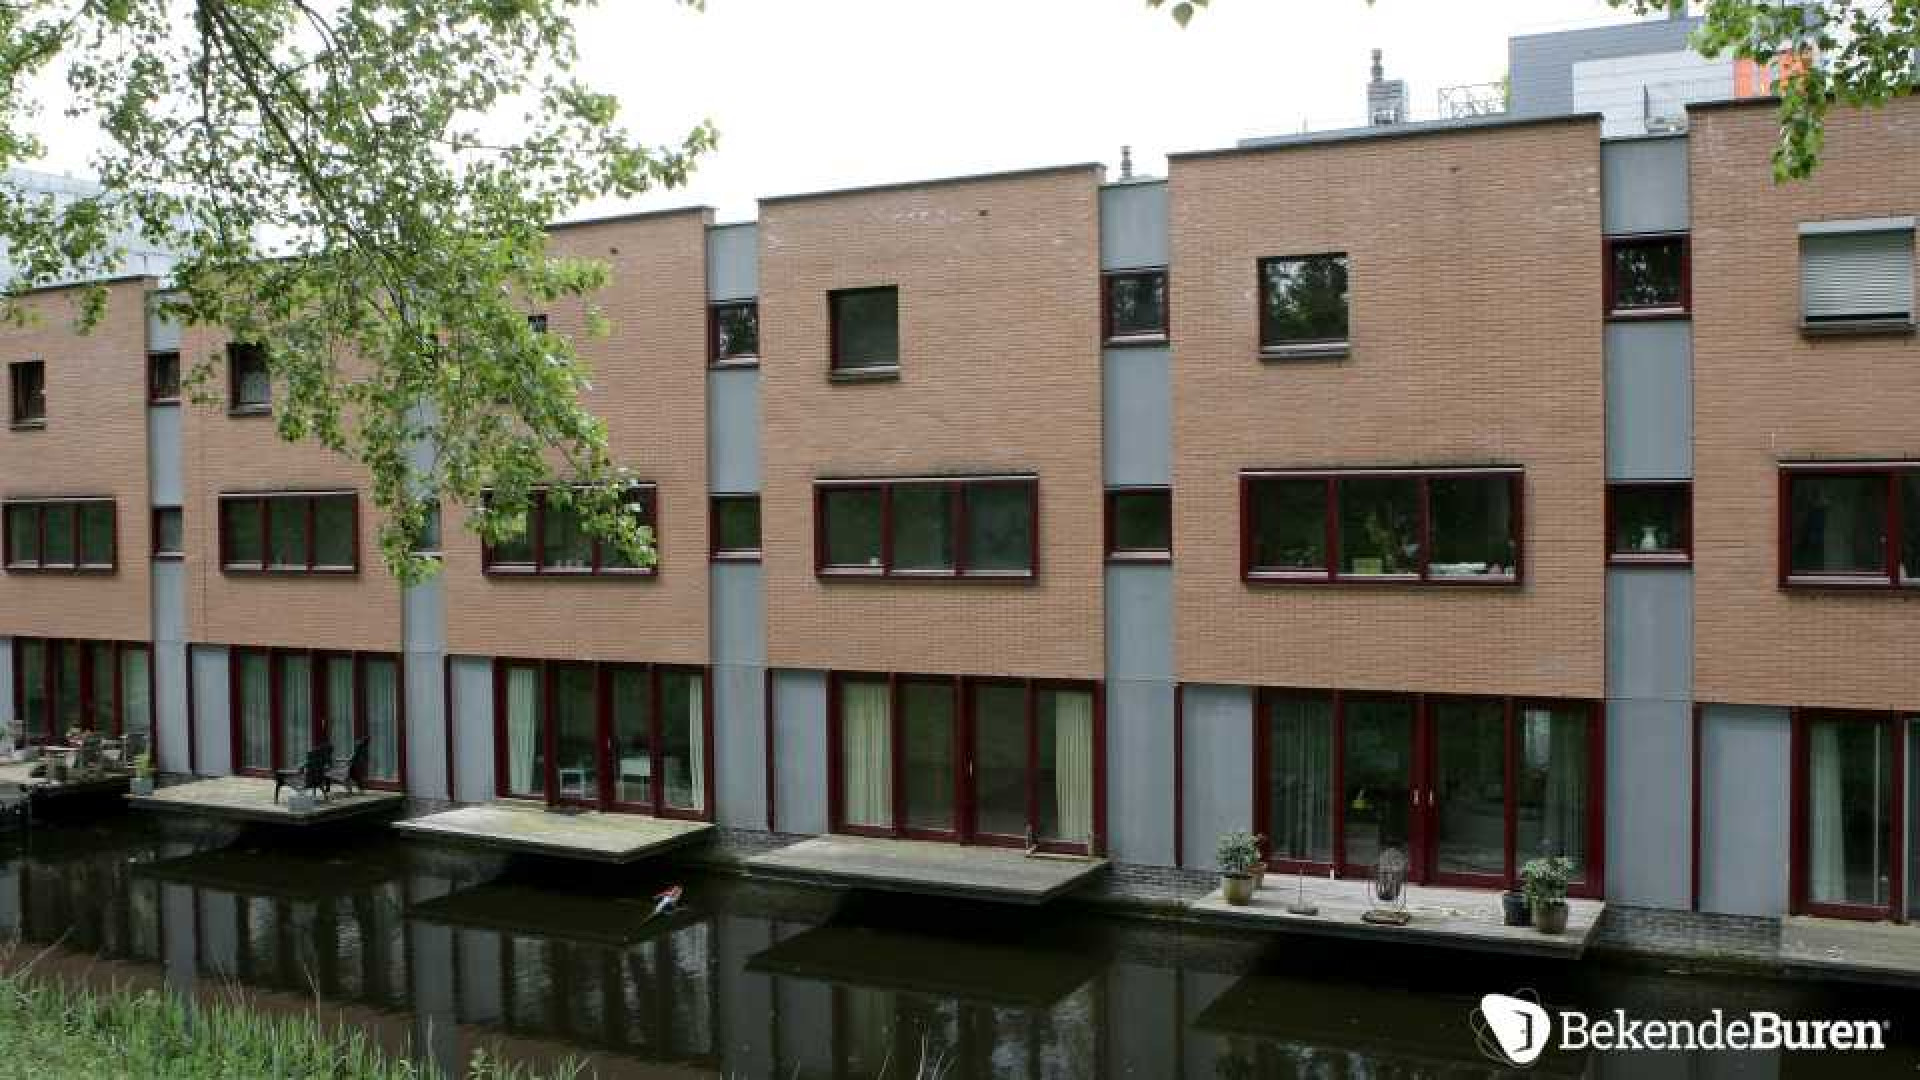 Jan Kooijman verruilt Rotterdam voor Amsterdam. Zie foto's 5